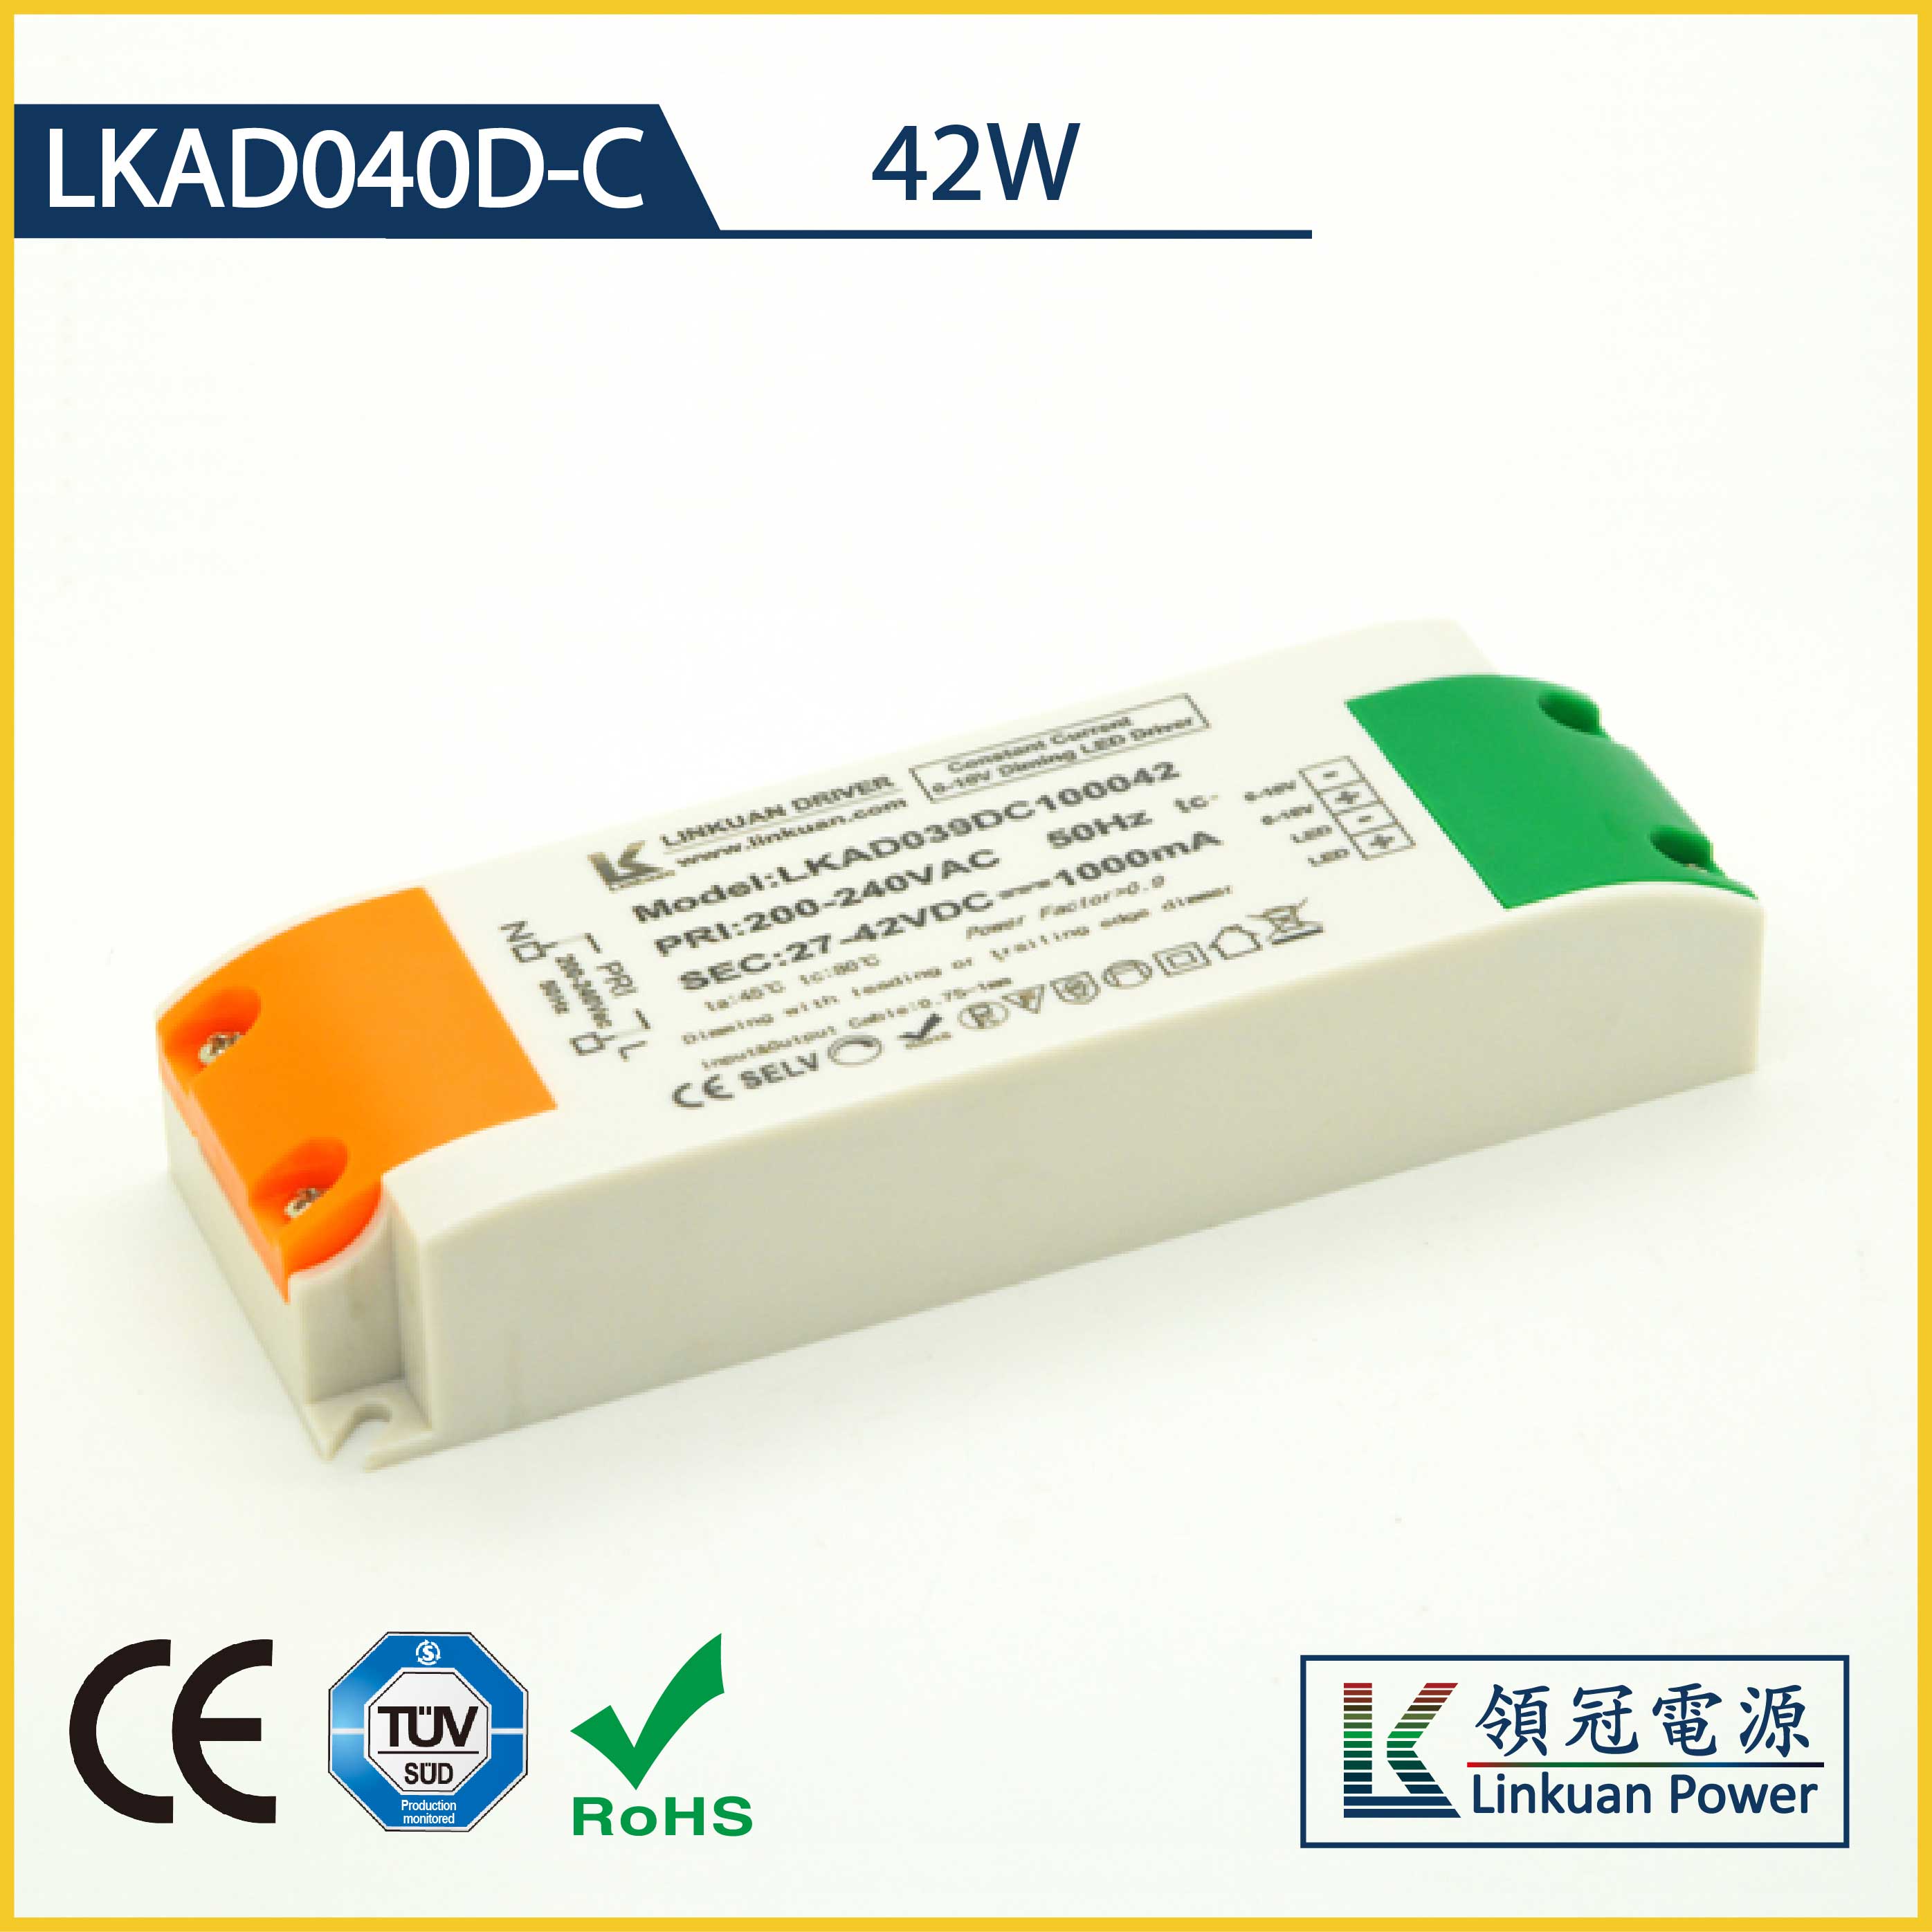 42W   3C/CB/CE认证0-10V调光电源LKAD040D-C